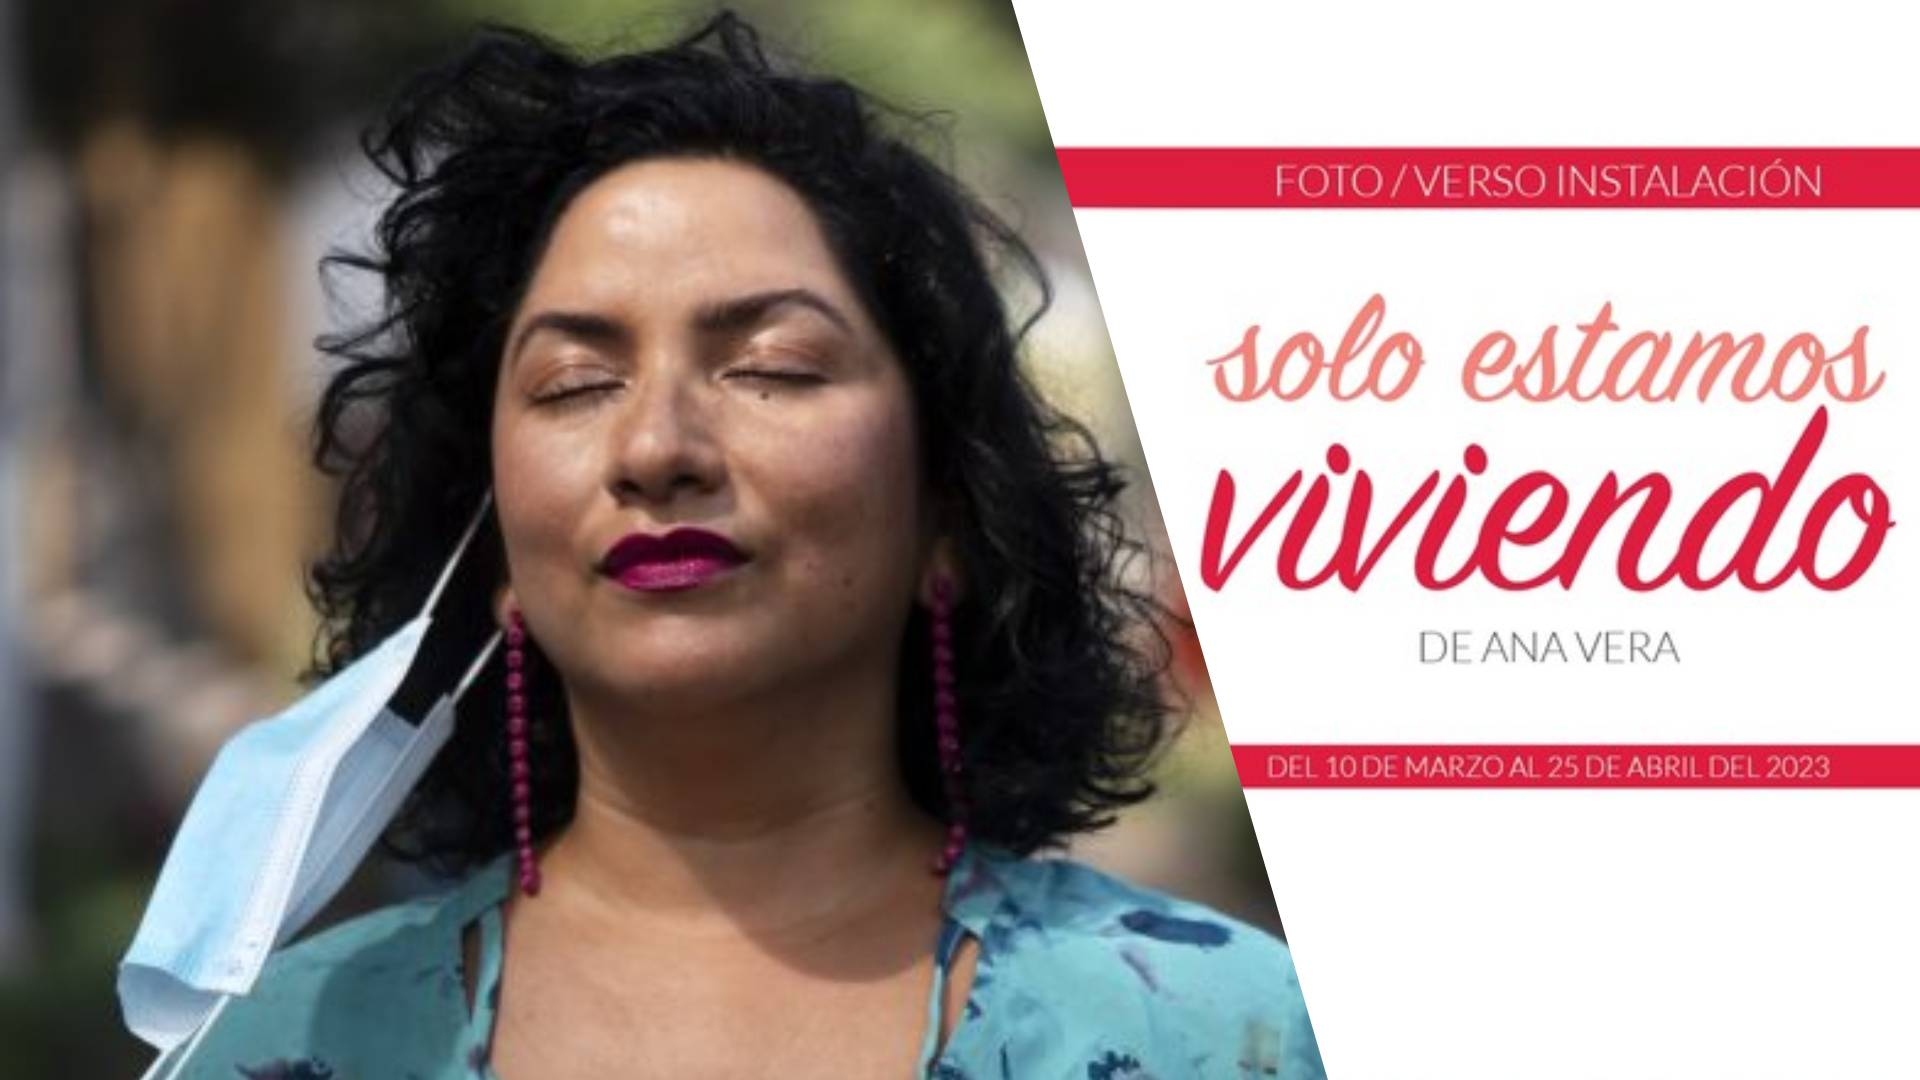 La poeta peruana Ana Vera realiza una muestra fotográfica de sus espacios durante la pandemia